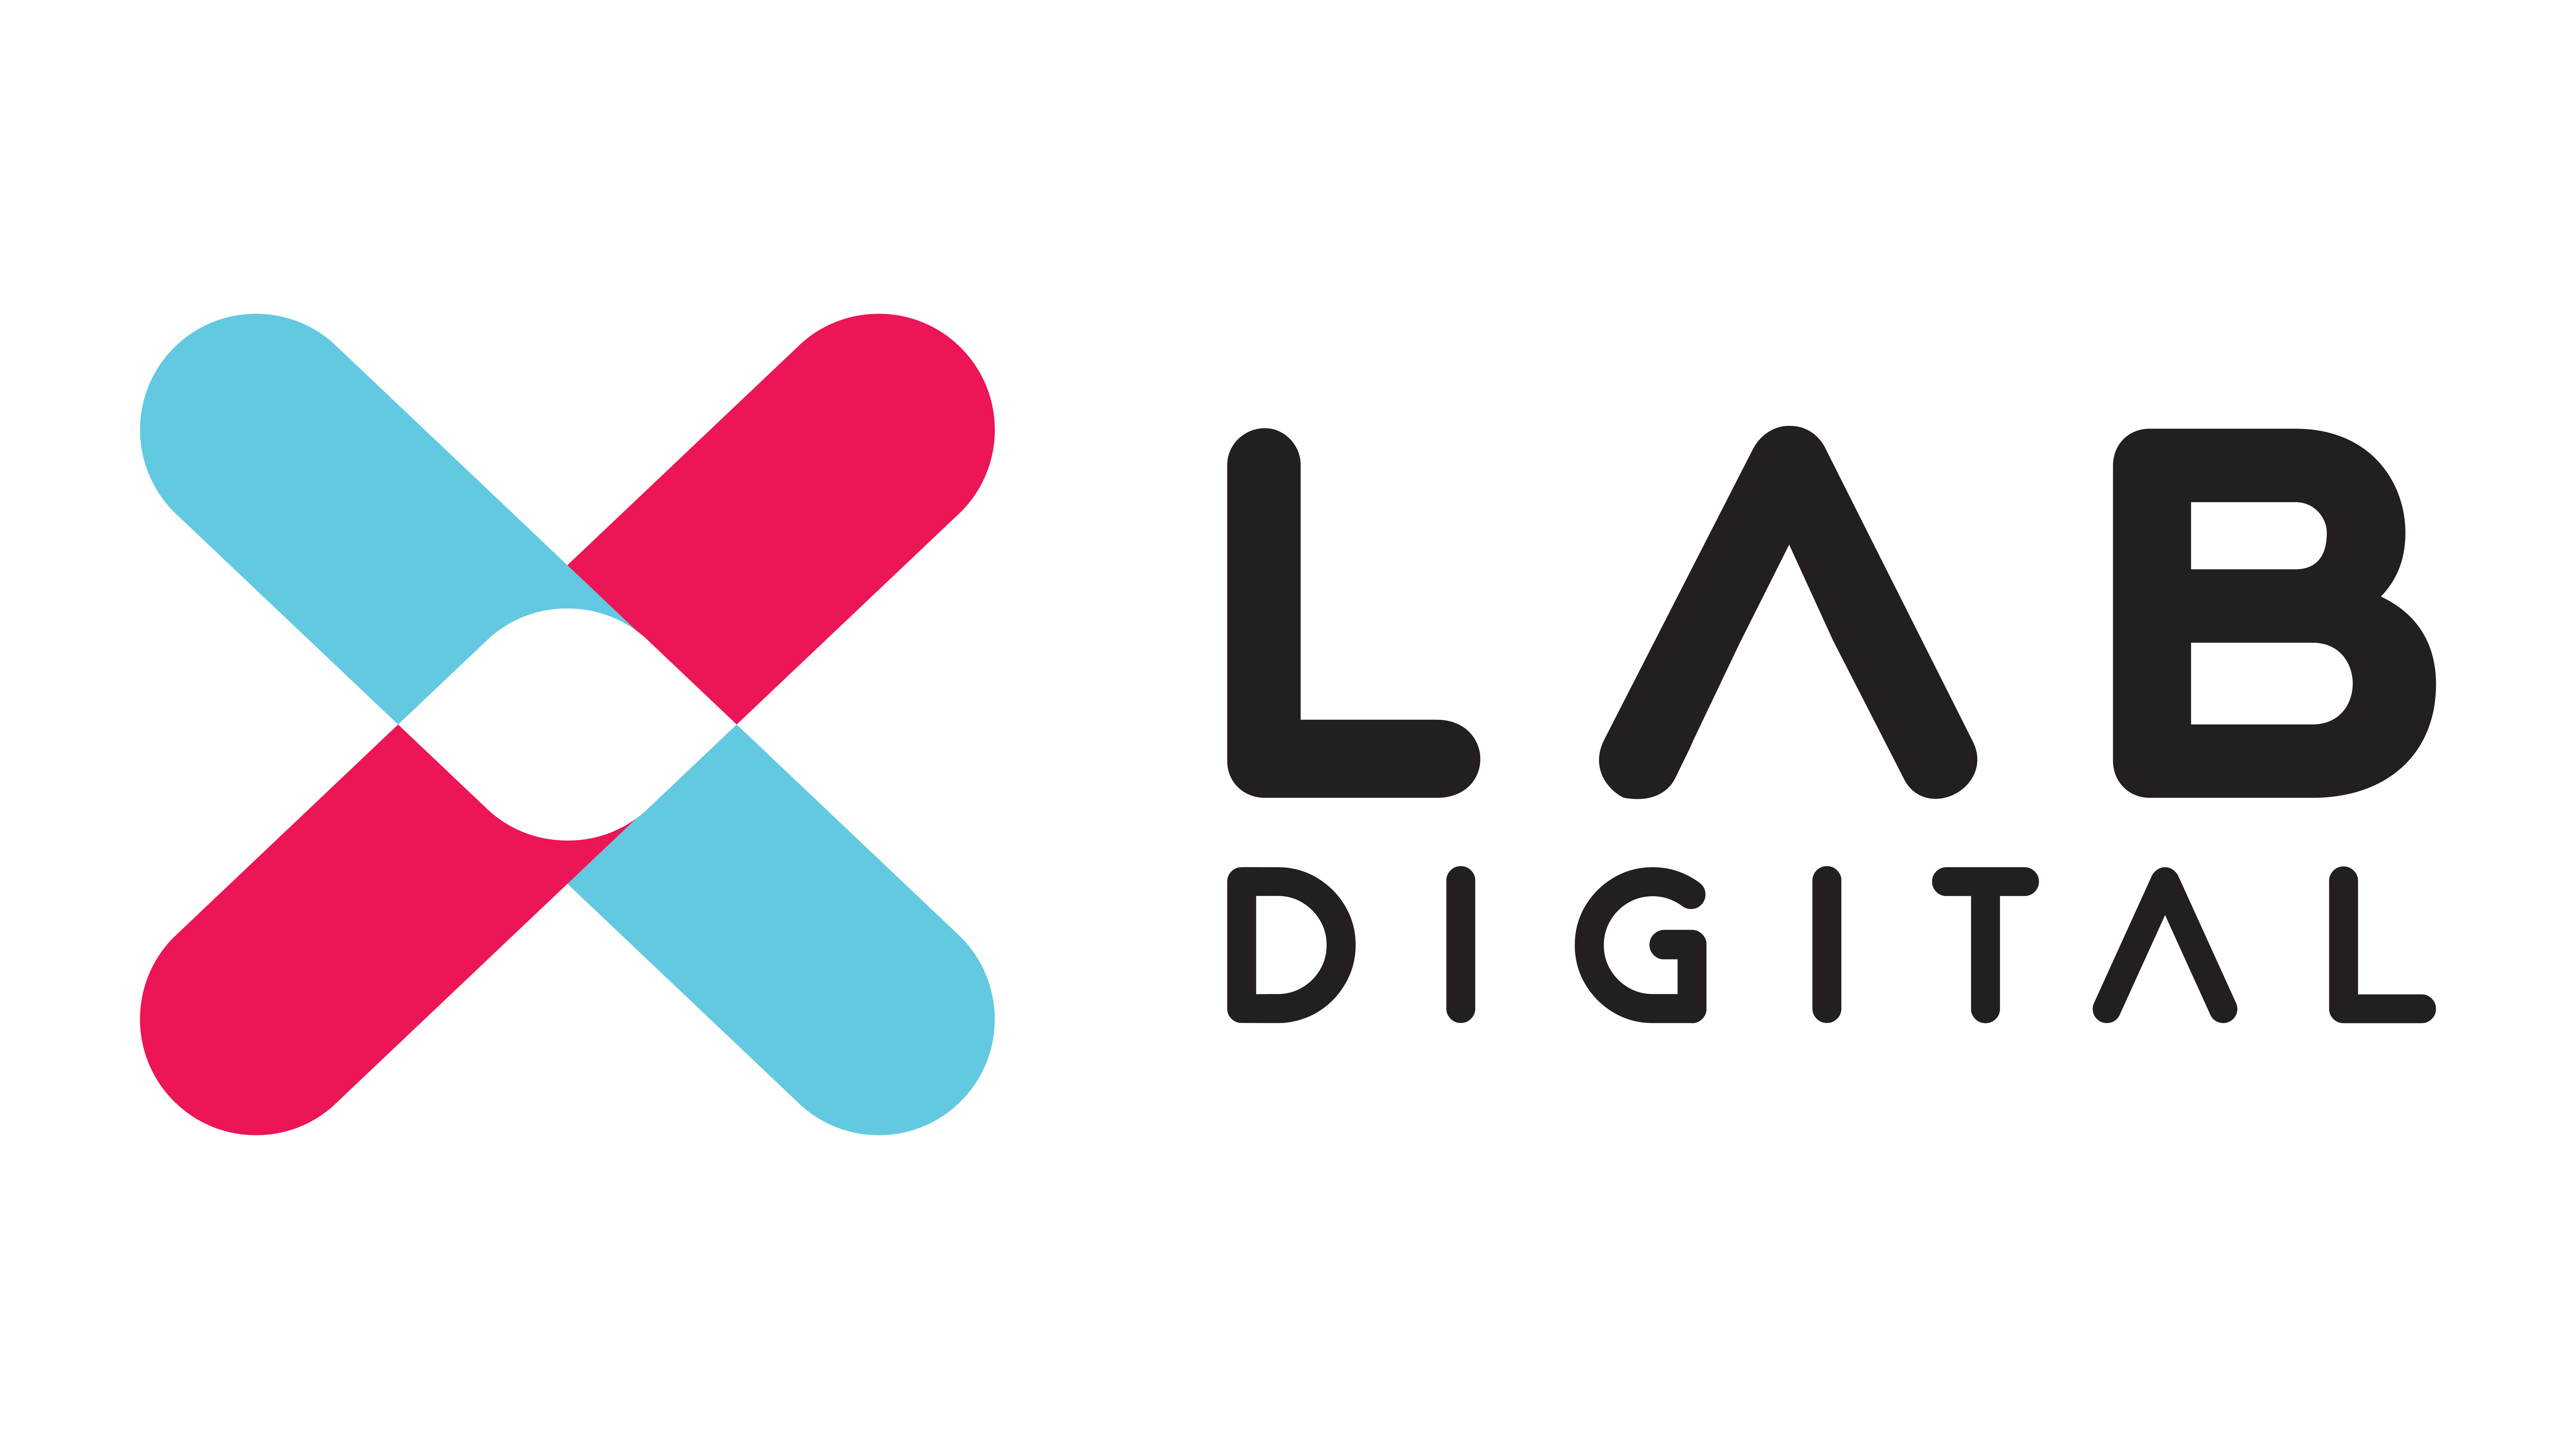 xlab digital black logo